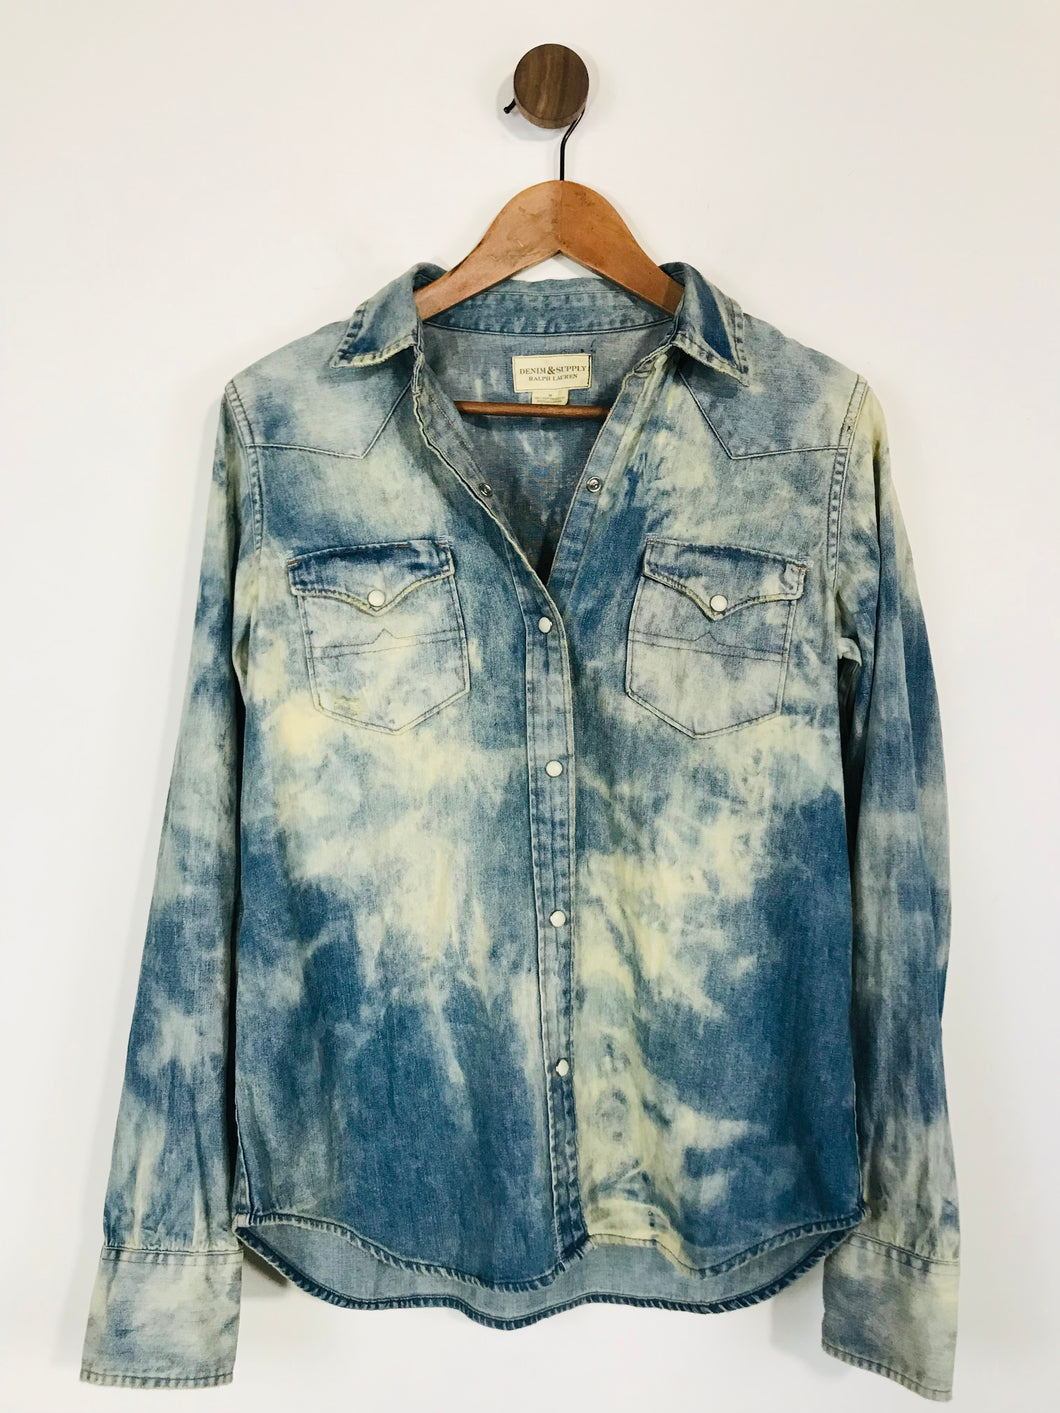 Ralph Lauren Women's Acid Wash Button-Up Shirt | M UK10-12 | Blue